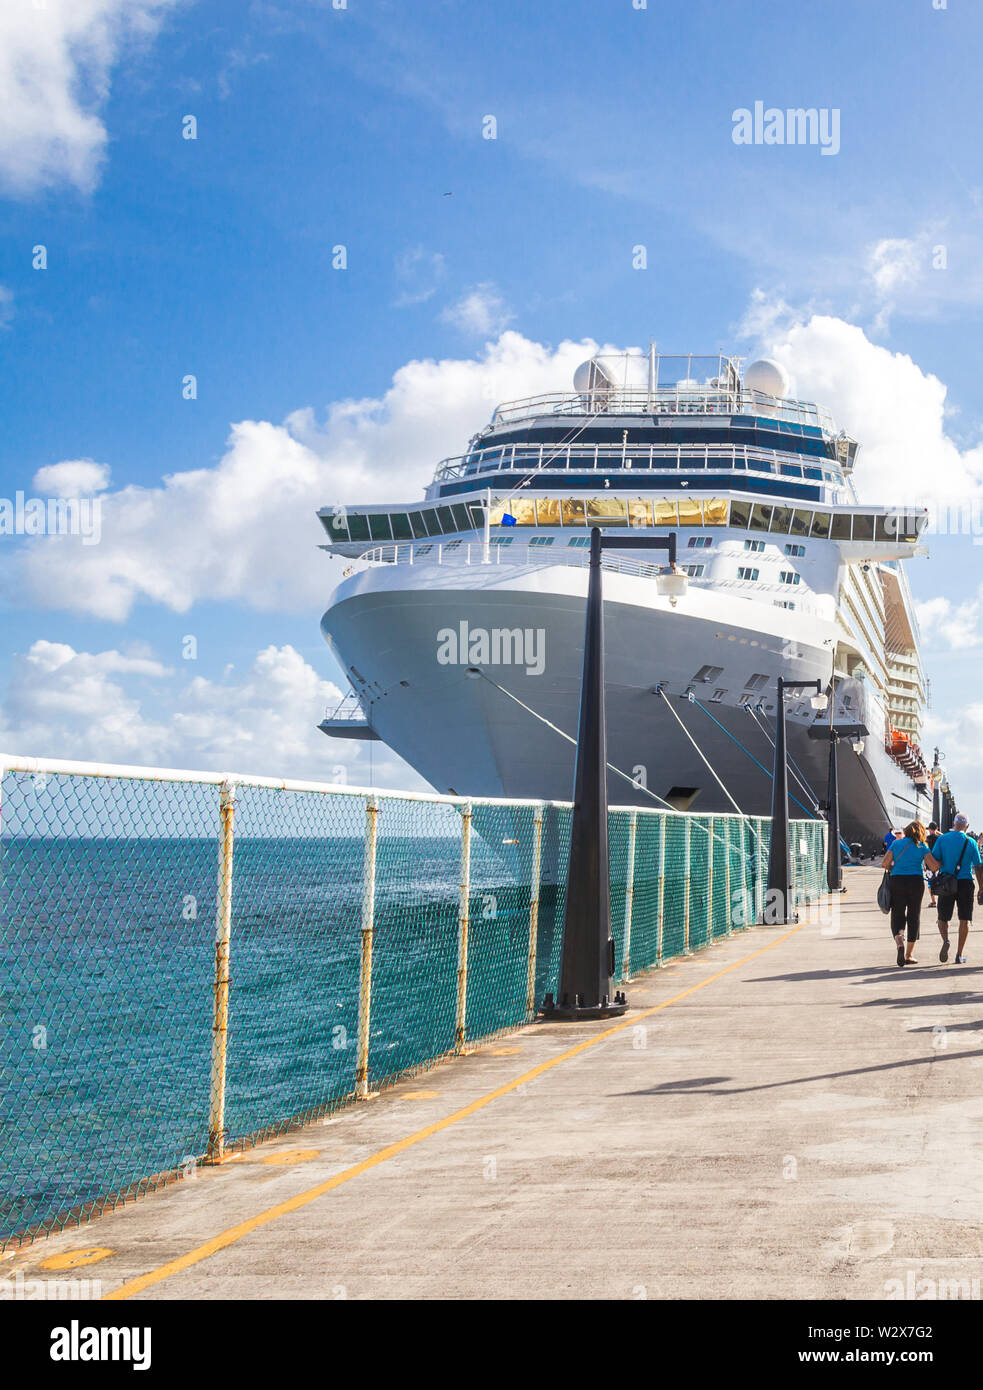 BASSETERRE, ST. Kit E NEVIS 14 dicembre, 2016: i passeggeri di crociera ritorno alla nave da crociera a St Kitts Porto Zante Foto Stock